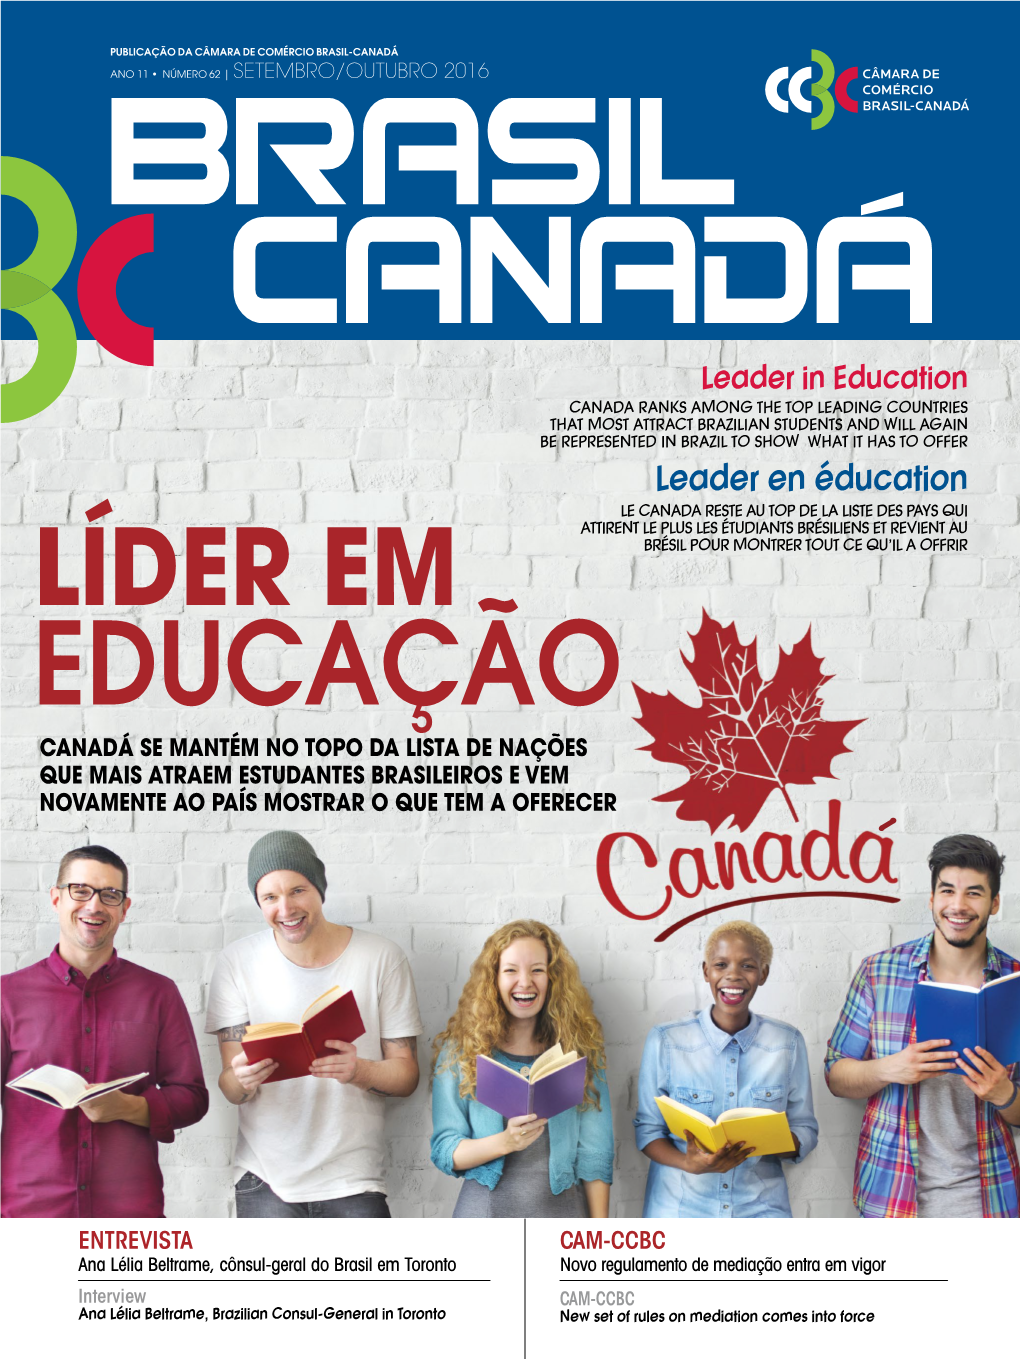 Educação Canadá Se Mantém No Topo Da Lista De Nações Que Mais Atraem Estudantes Brasileiros E Vem Novamente Ao País Mostrar O Que Tem a Oferecer